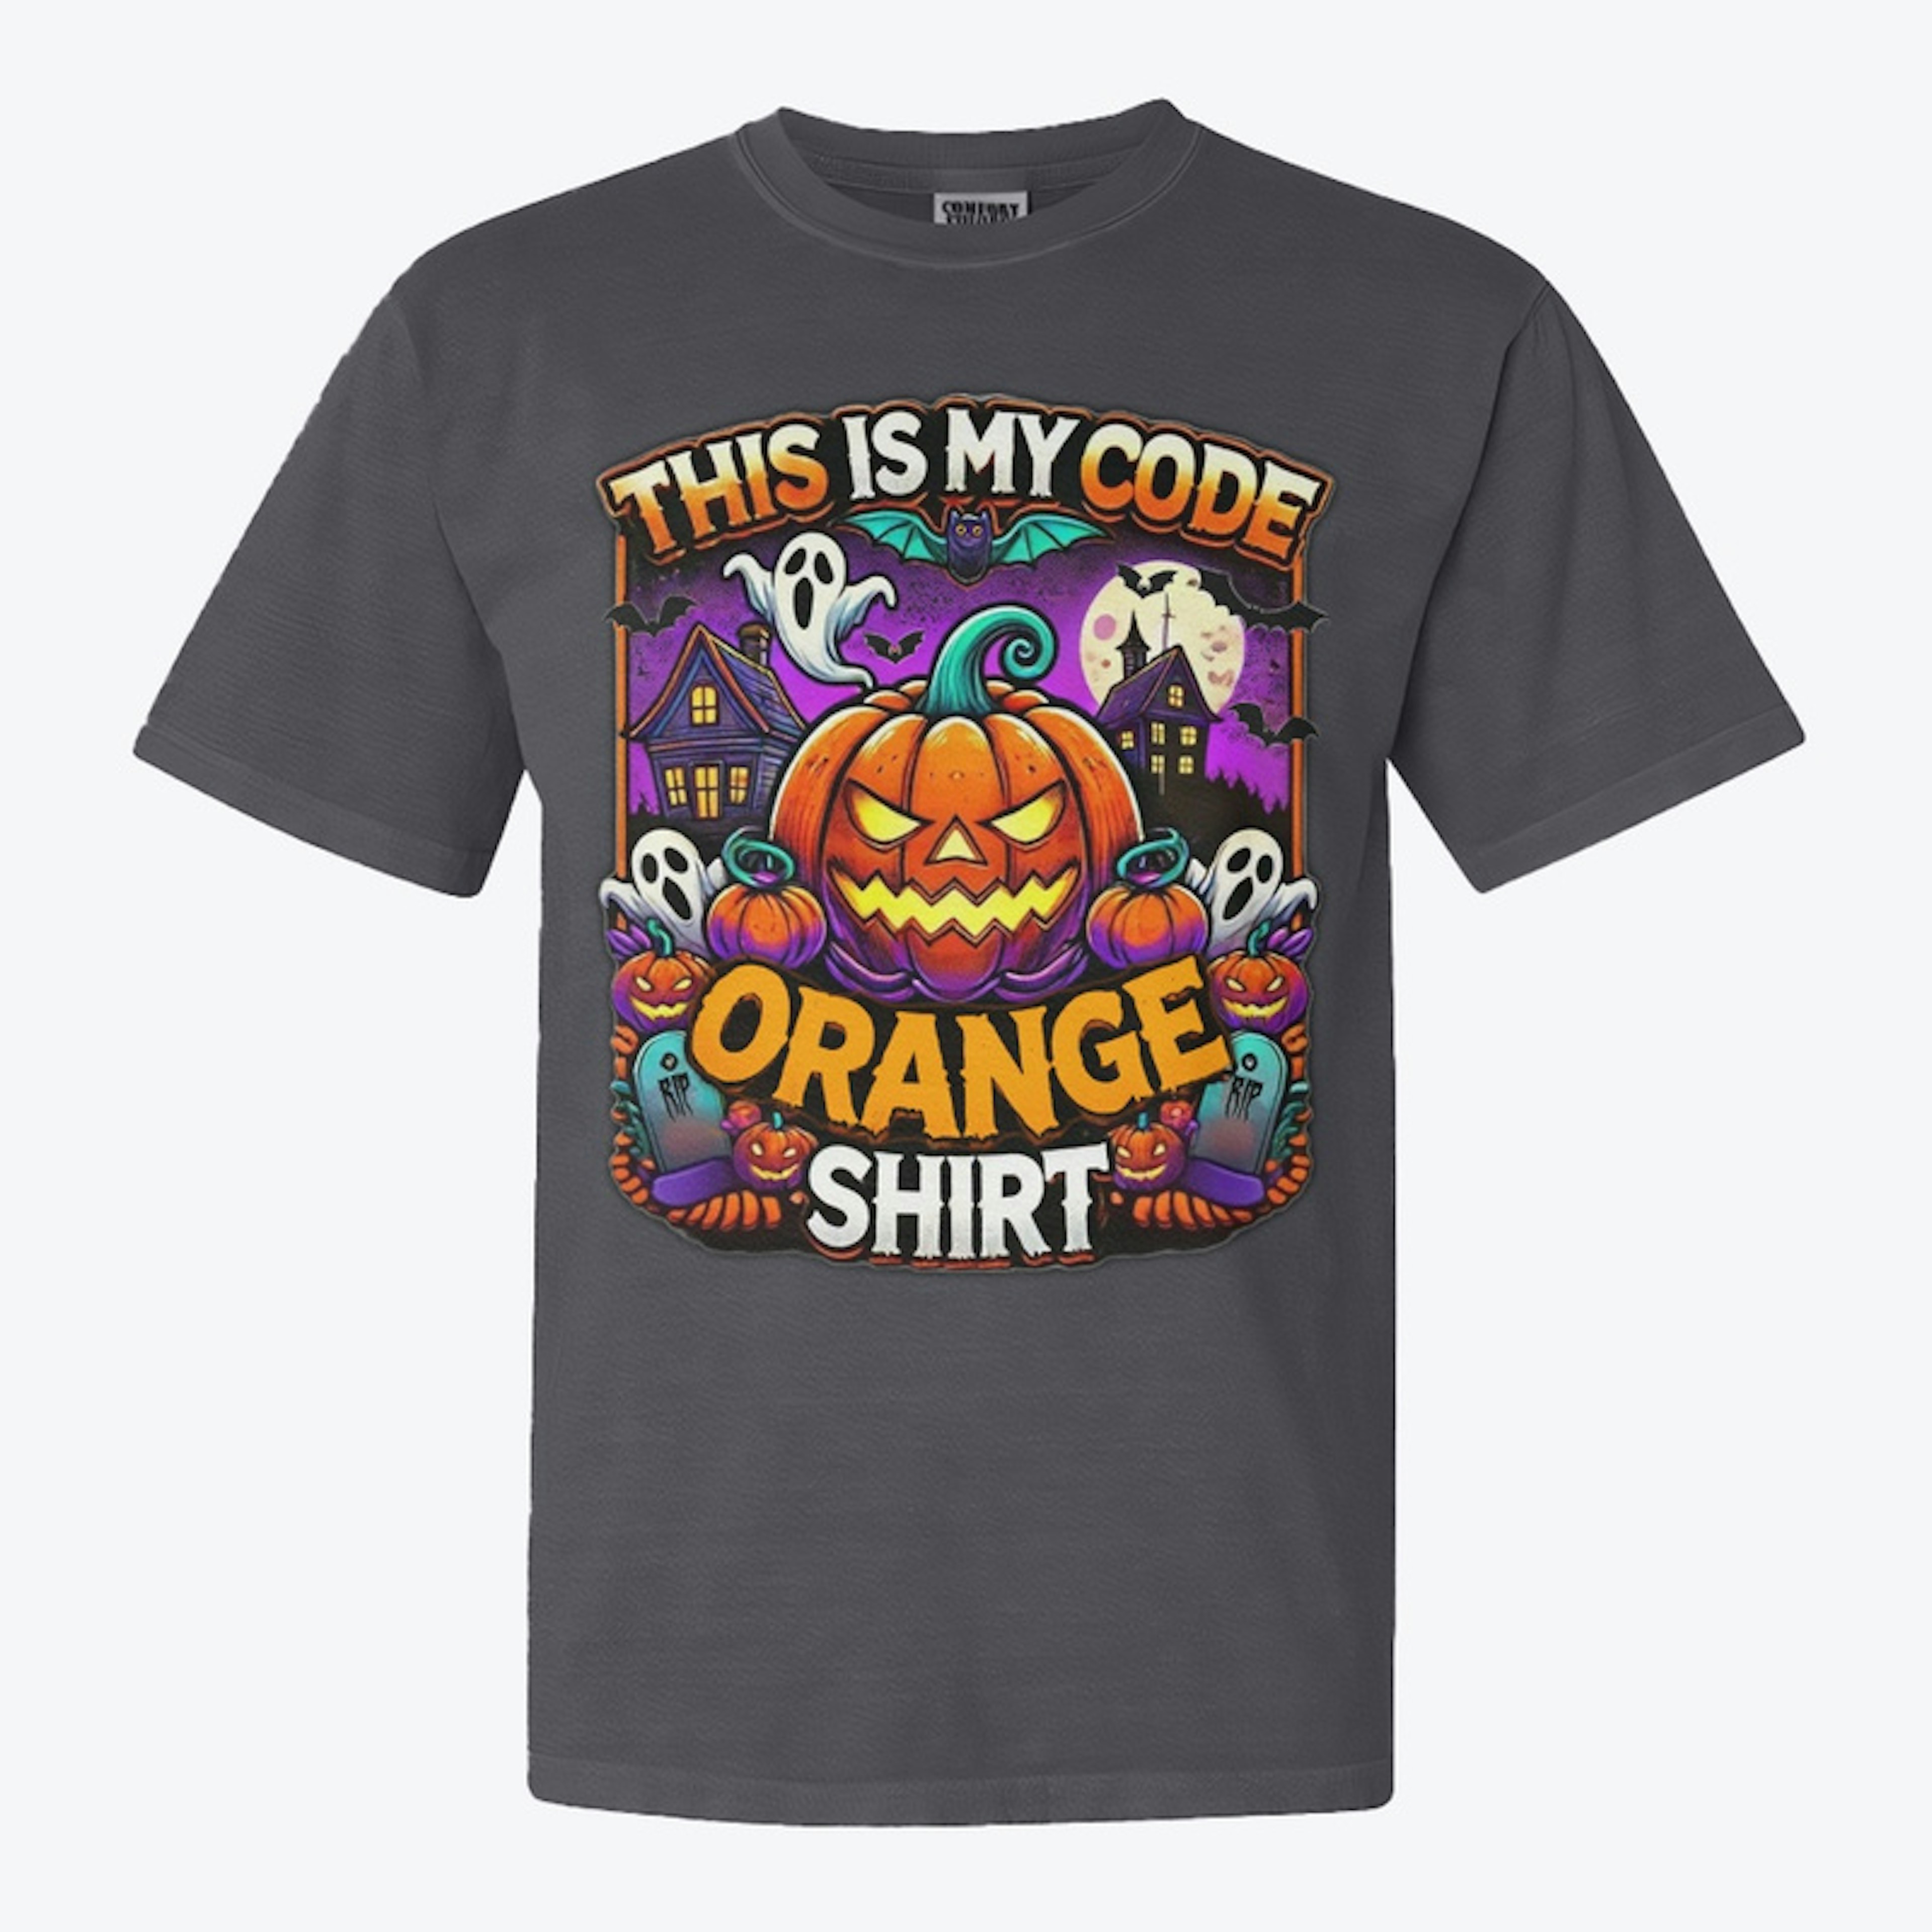 It's Code Orange Time!